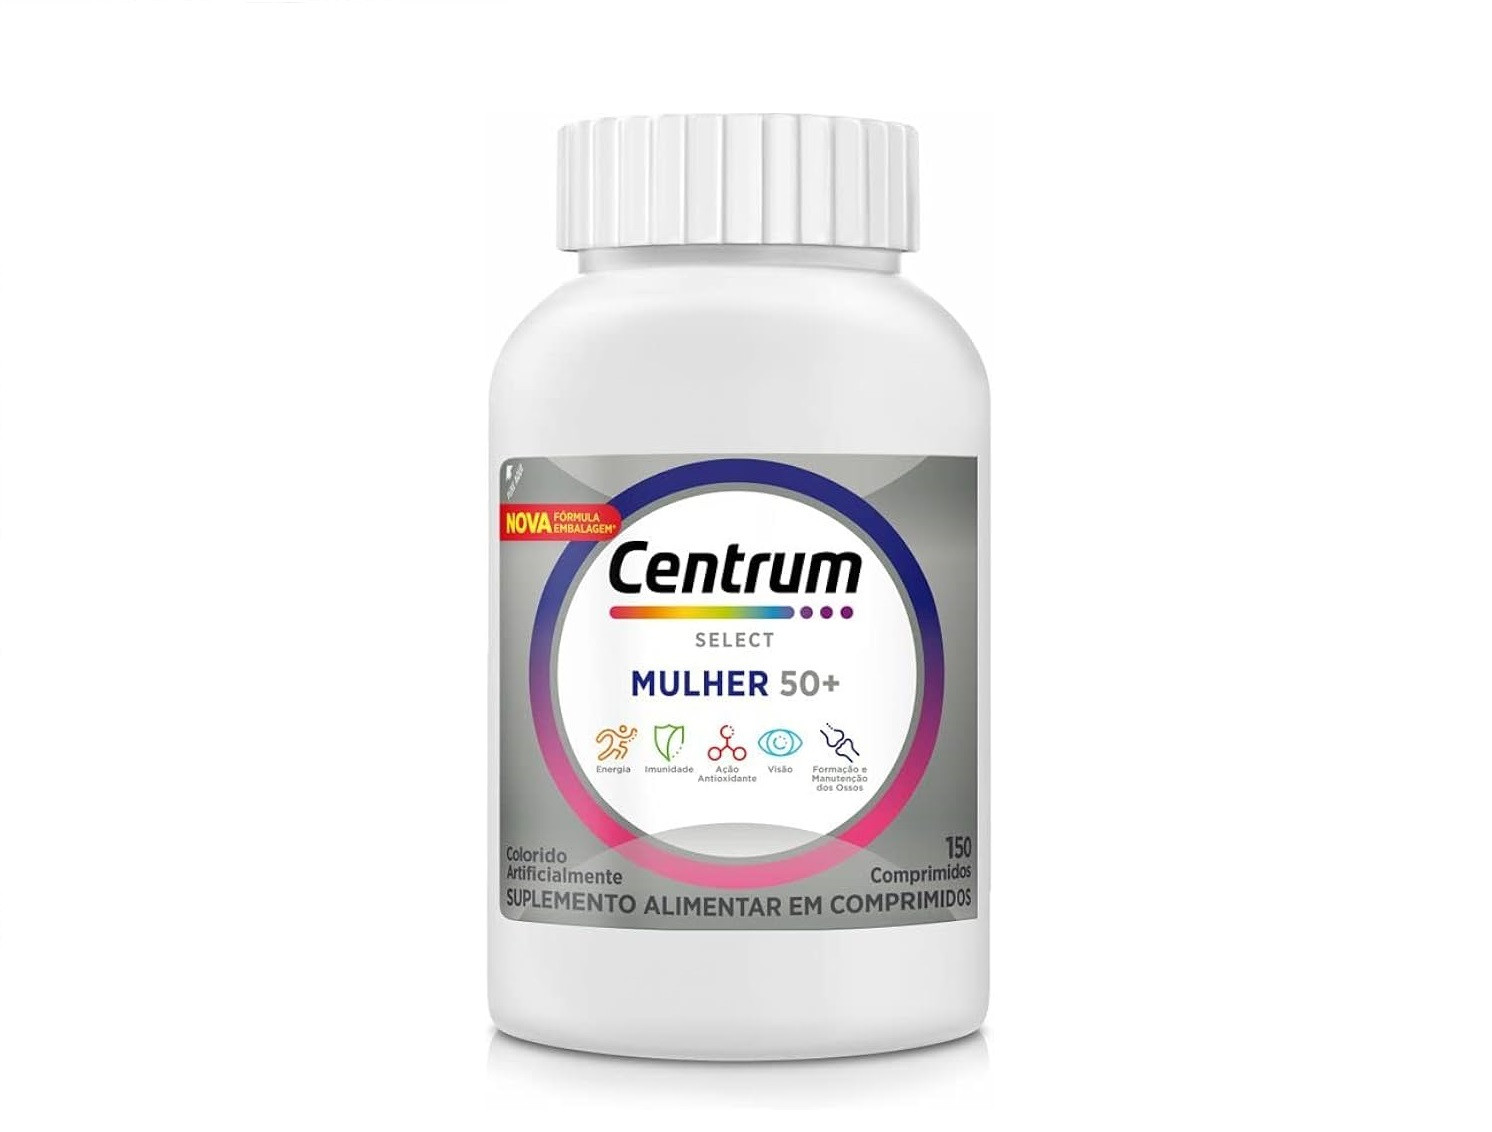 Centrum Select Mulher 50+ Multivitamínicos 150 Comprimidos